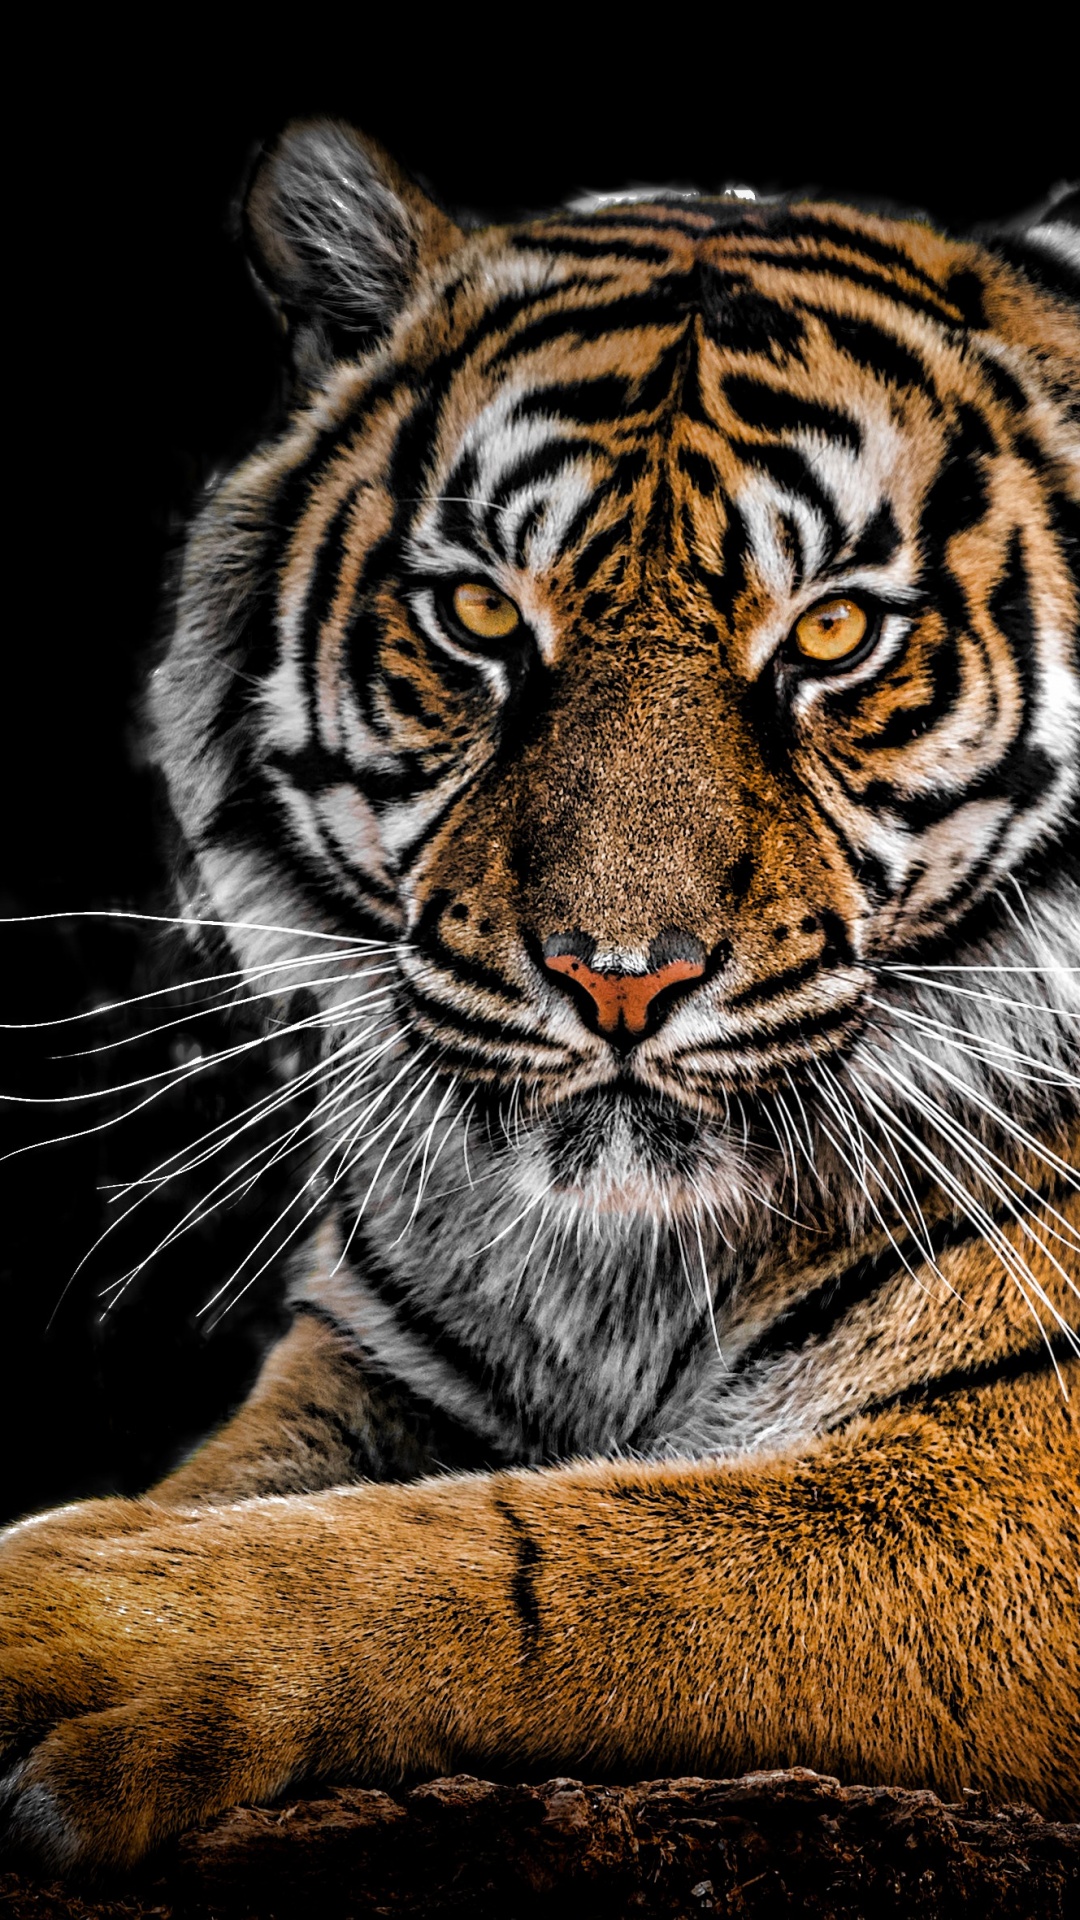 Bengal Tiger 4K Wallpaper, Big cat, Predator, Black